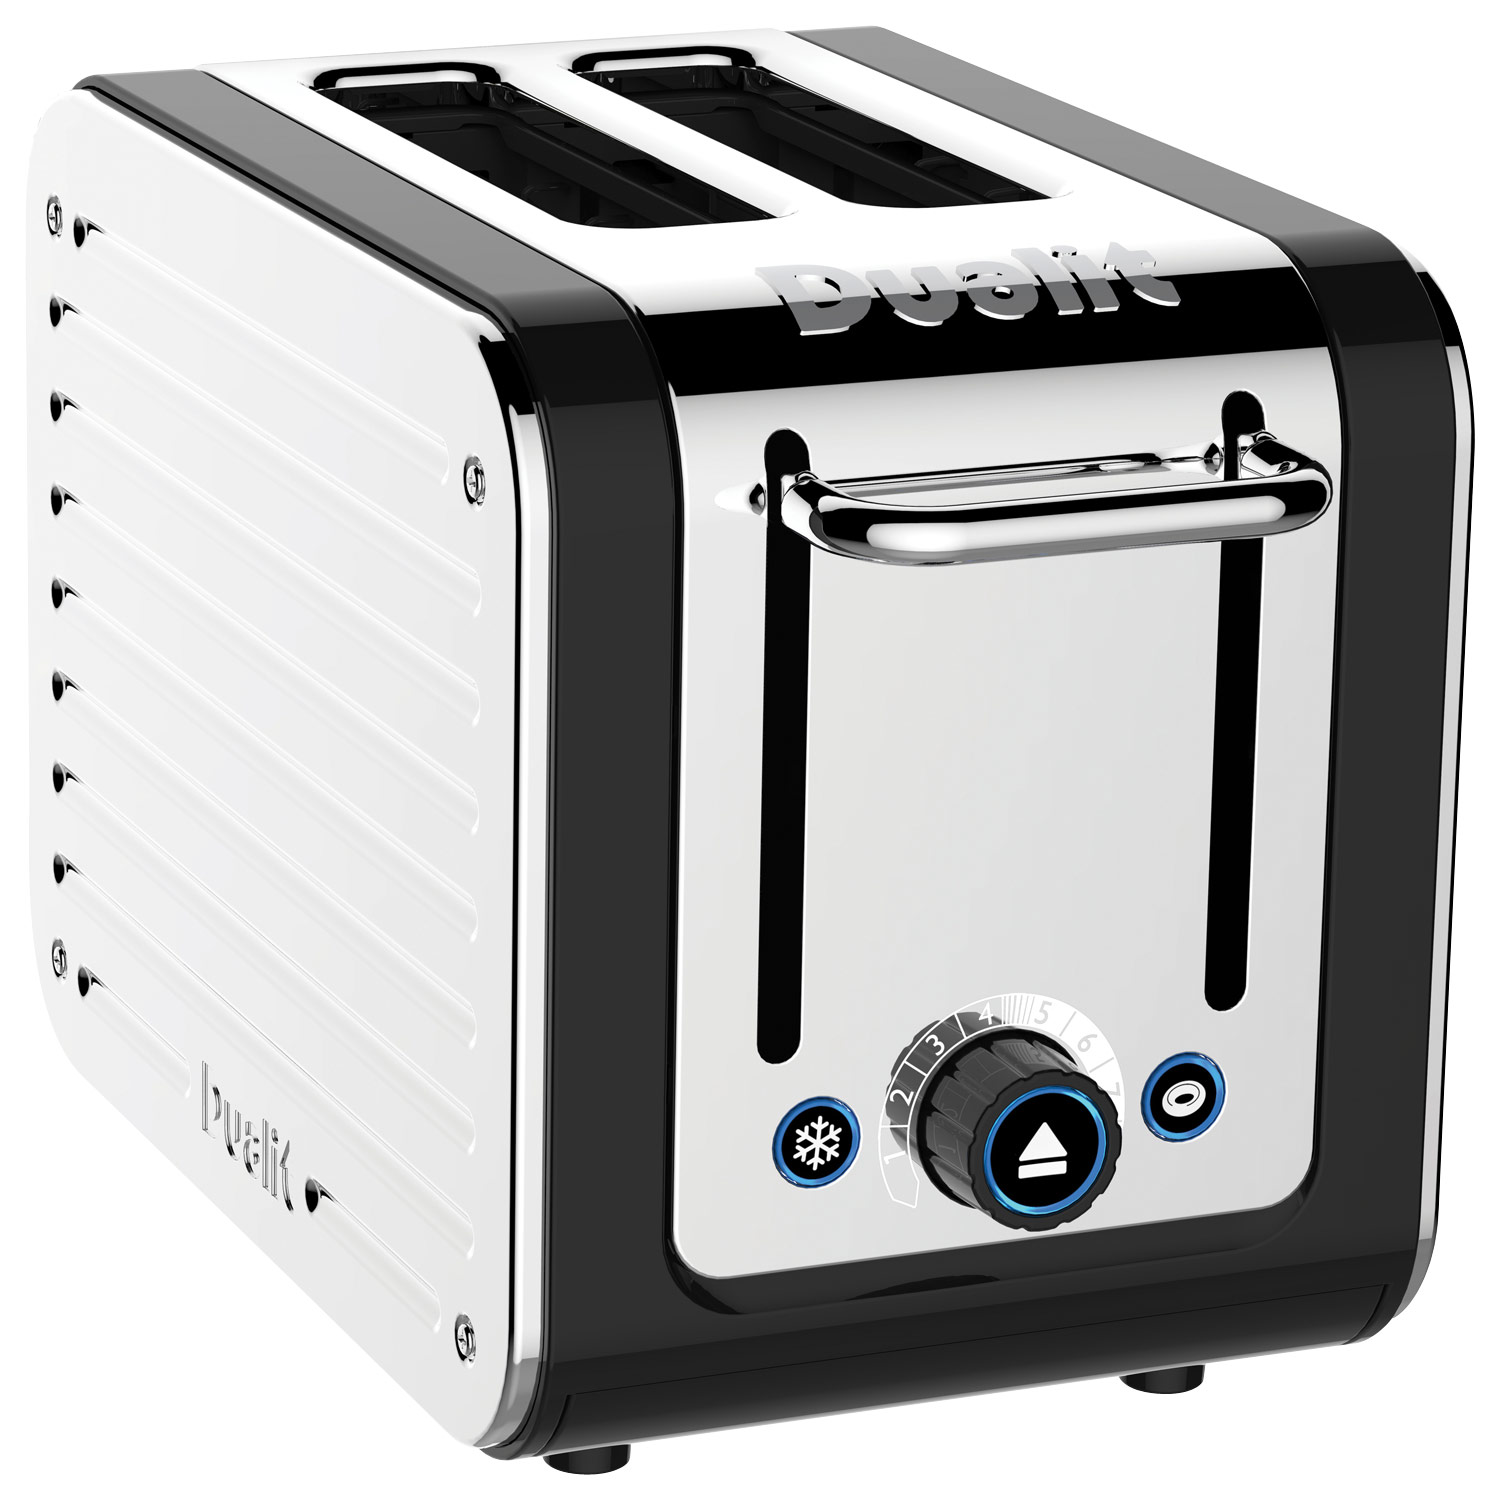 Design classic: Dualit toaster